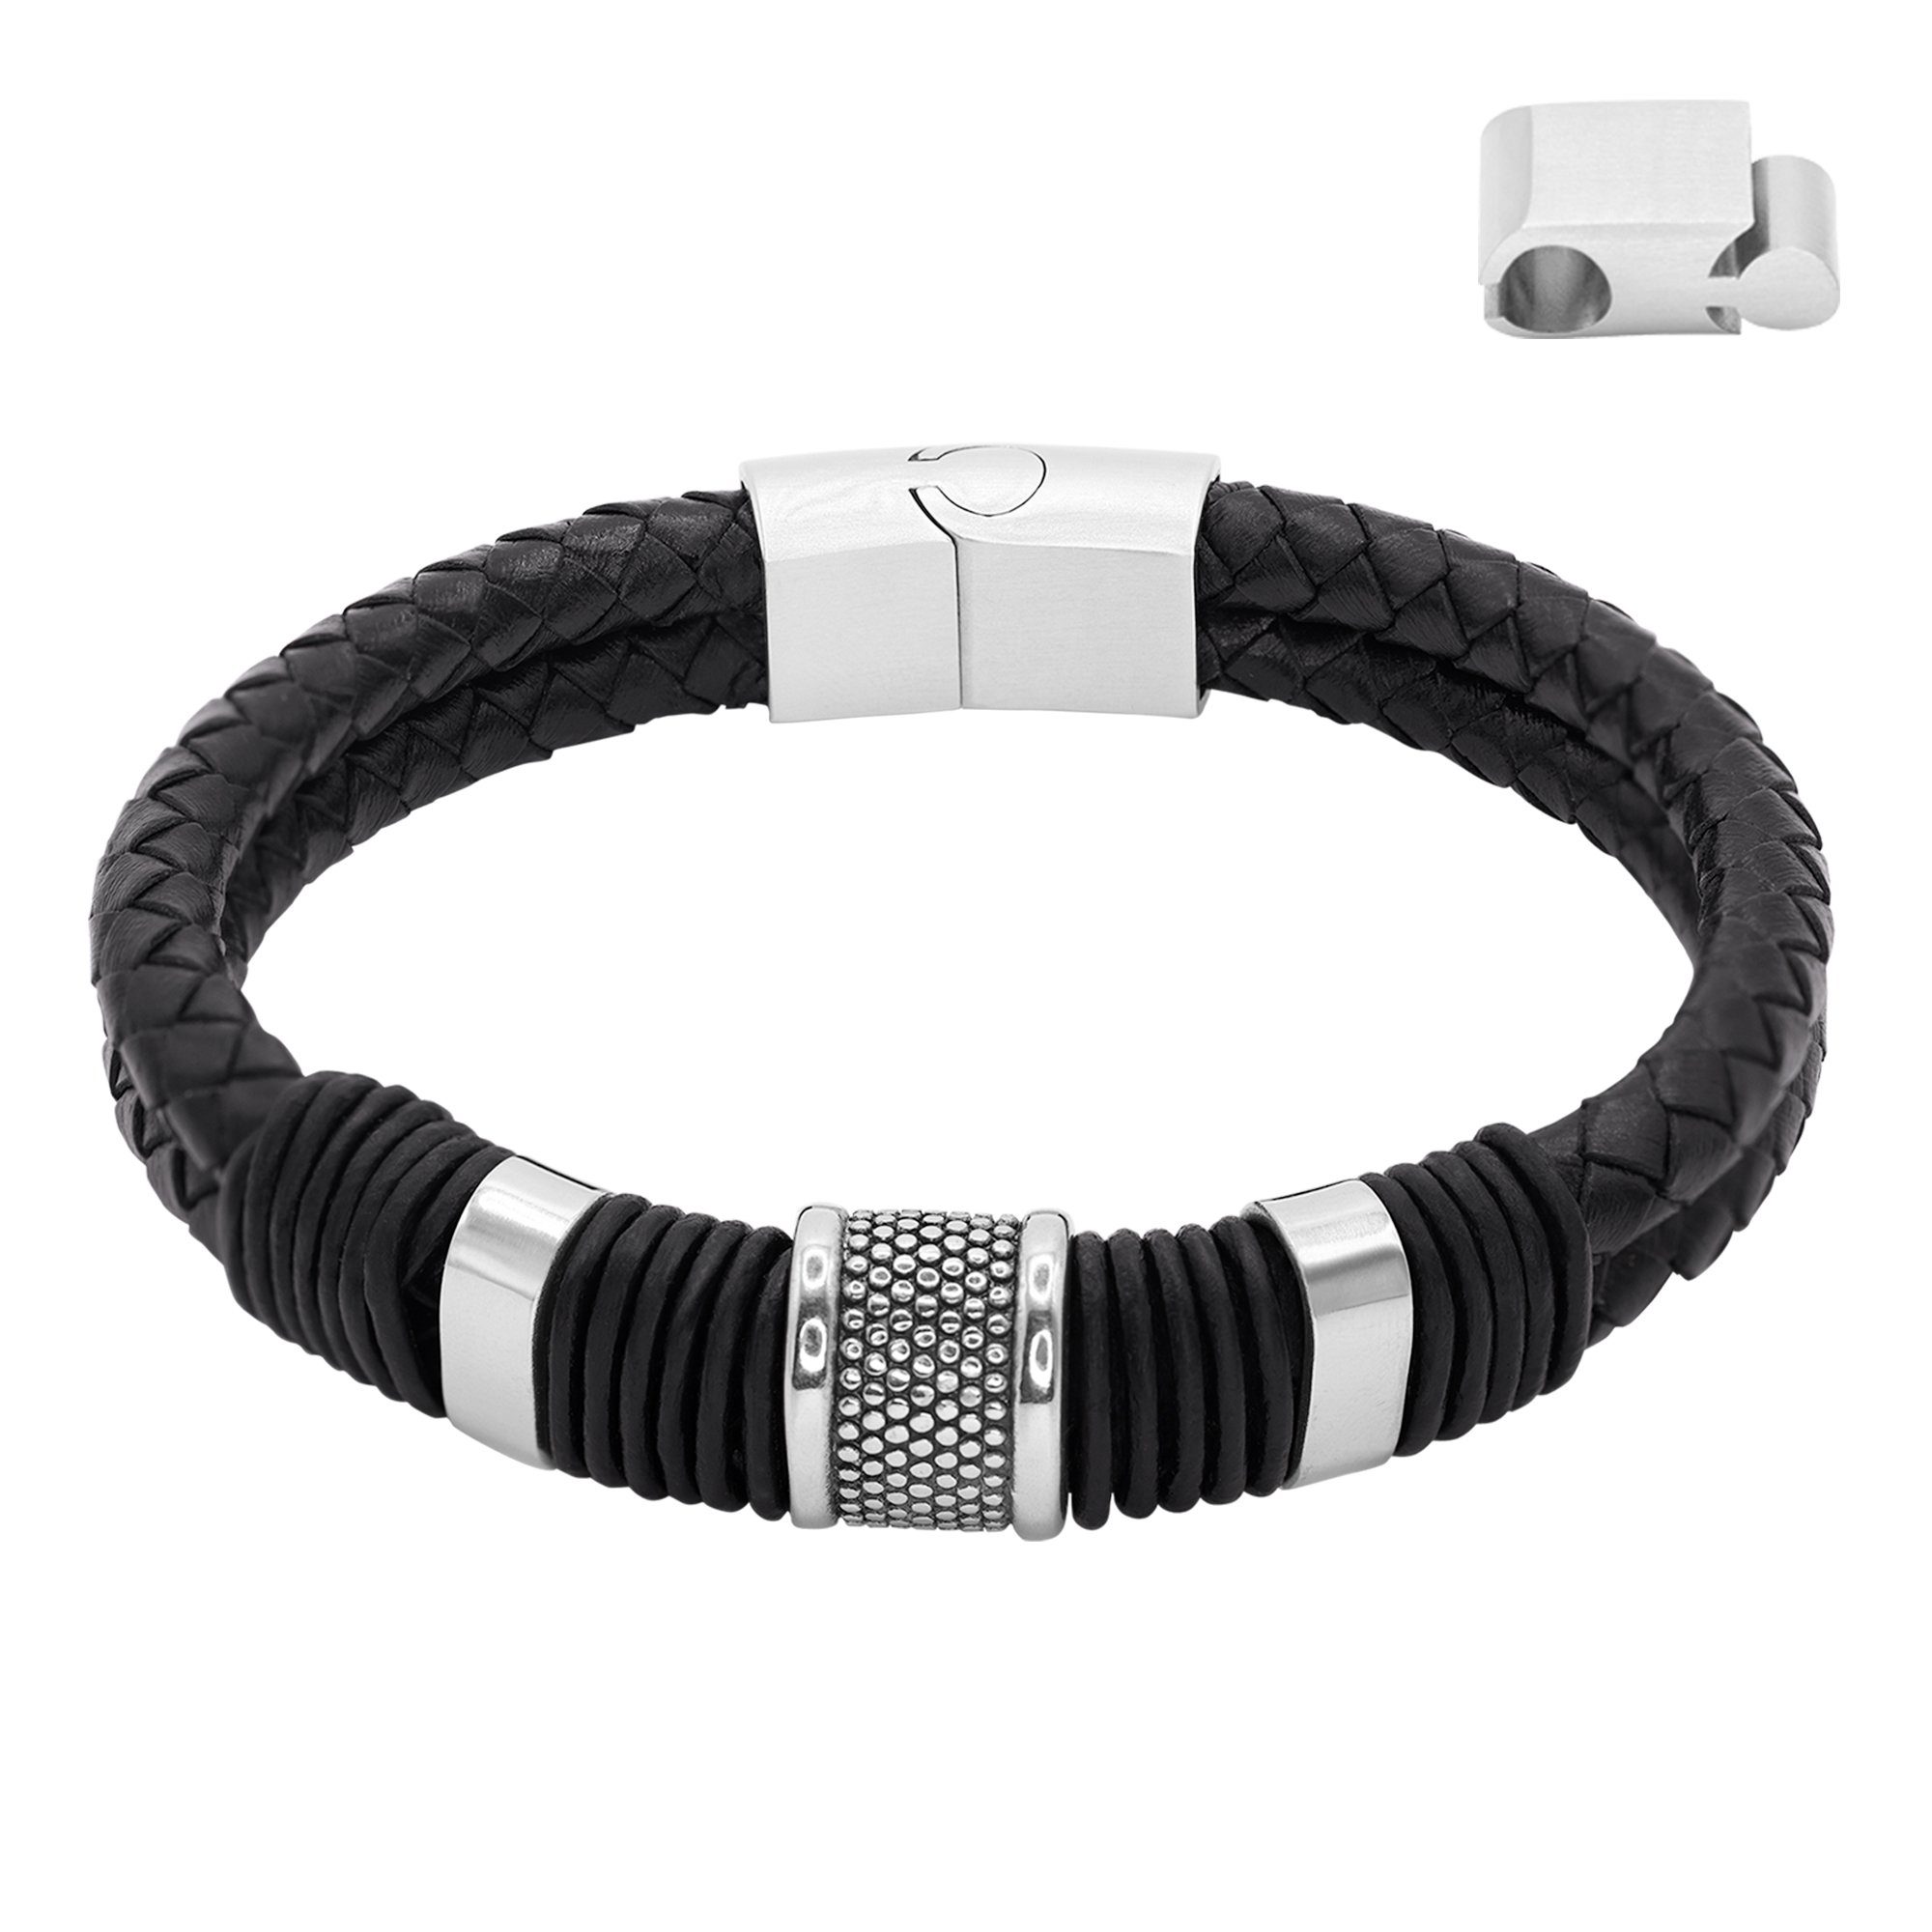 Männerlederarmband Lederarmband Heideman (Armband, Echtlederarmband, Armband inkl. Geschenkverpackung), Männerarmband, Kian